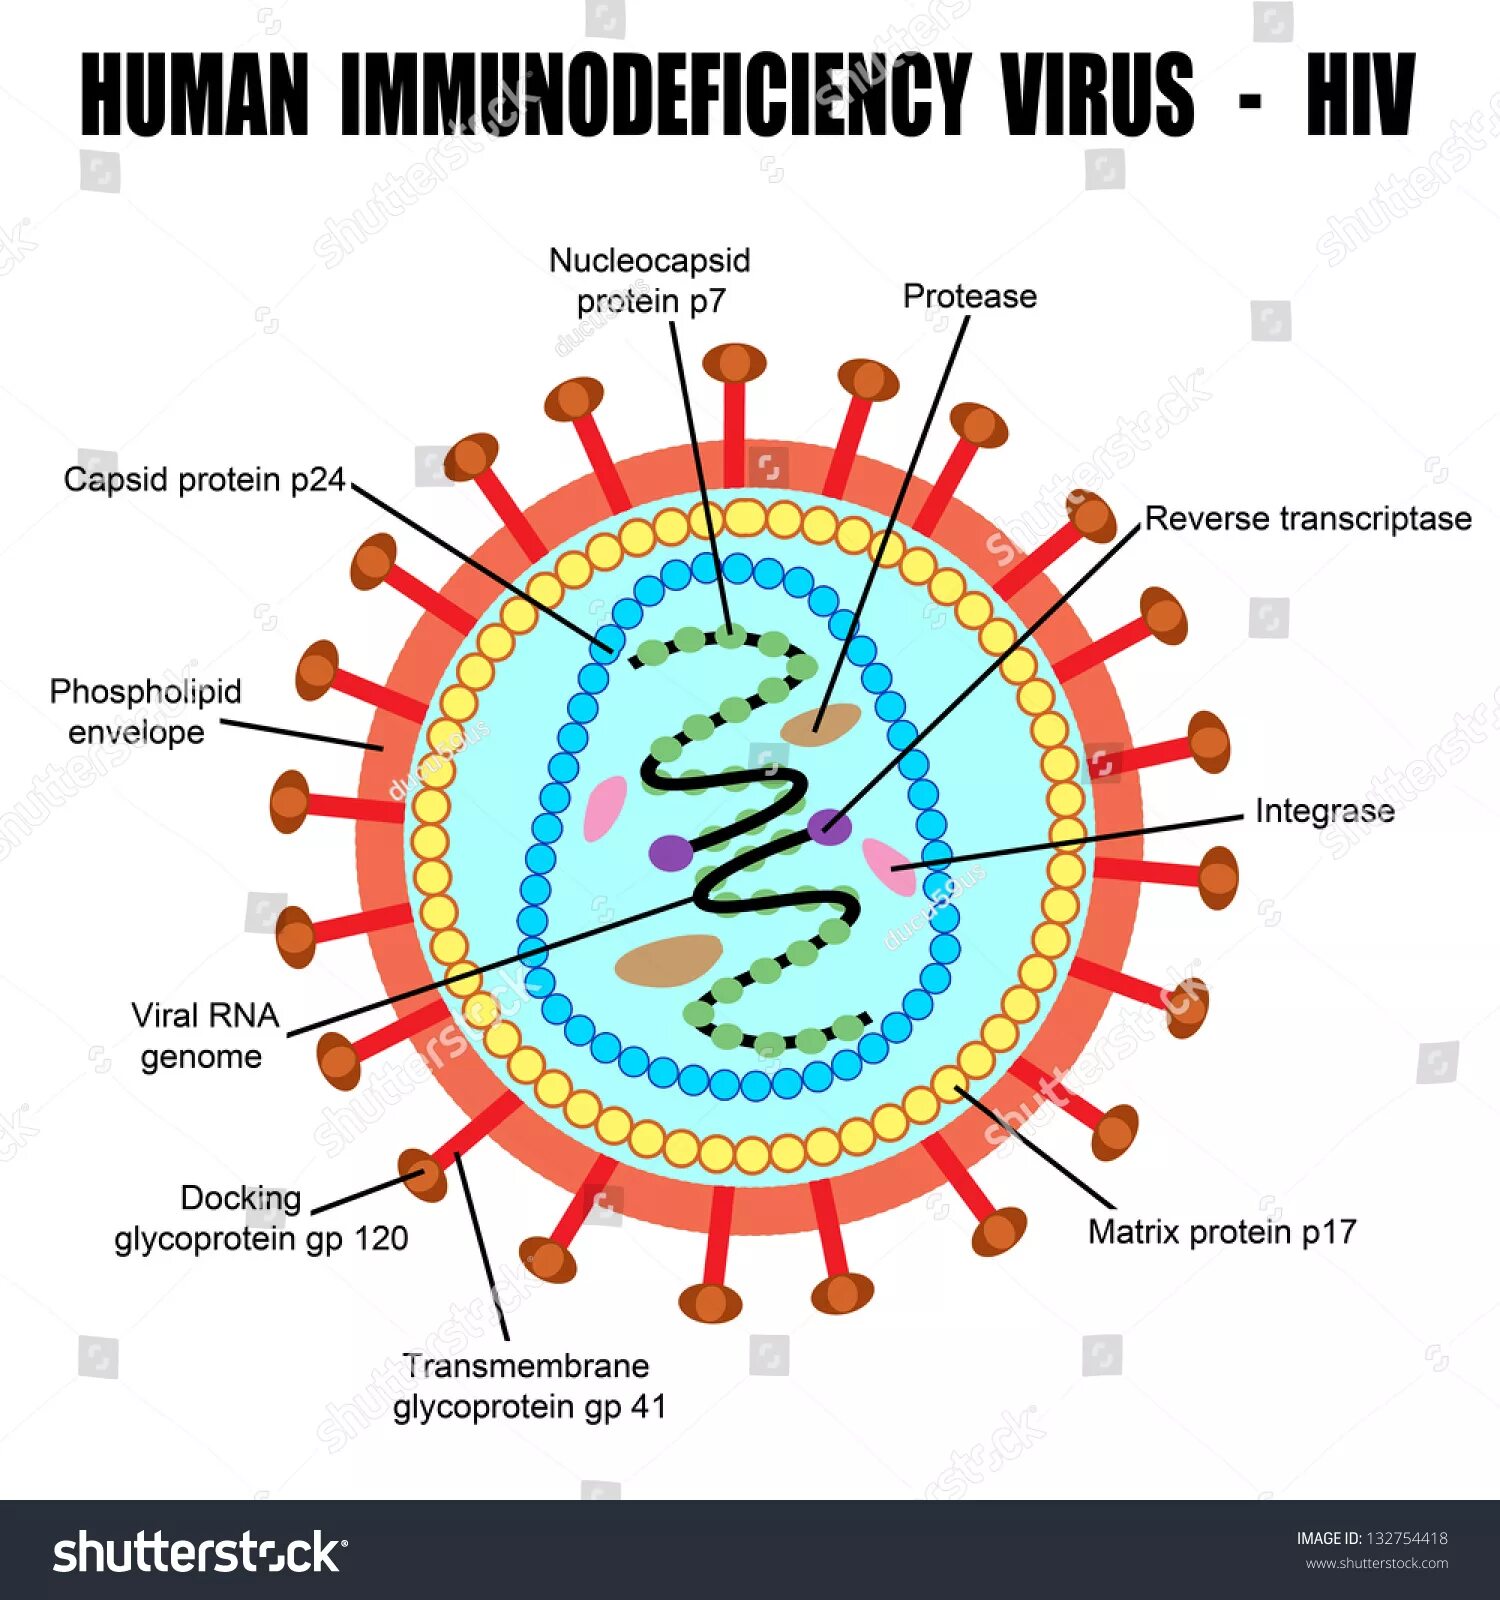 Human immunodeficiency. Строение вируса ВИЧ. ВИЧ рисунок вируса. Вирус иммунодефицита человека (Human Immunodeficiency virus). HIV-4 вирус.